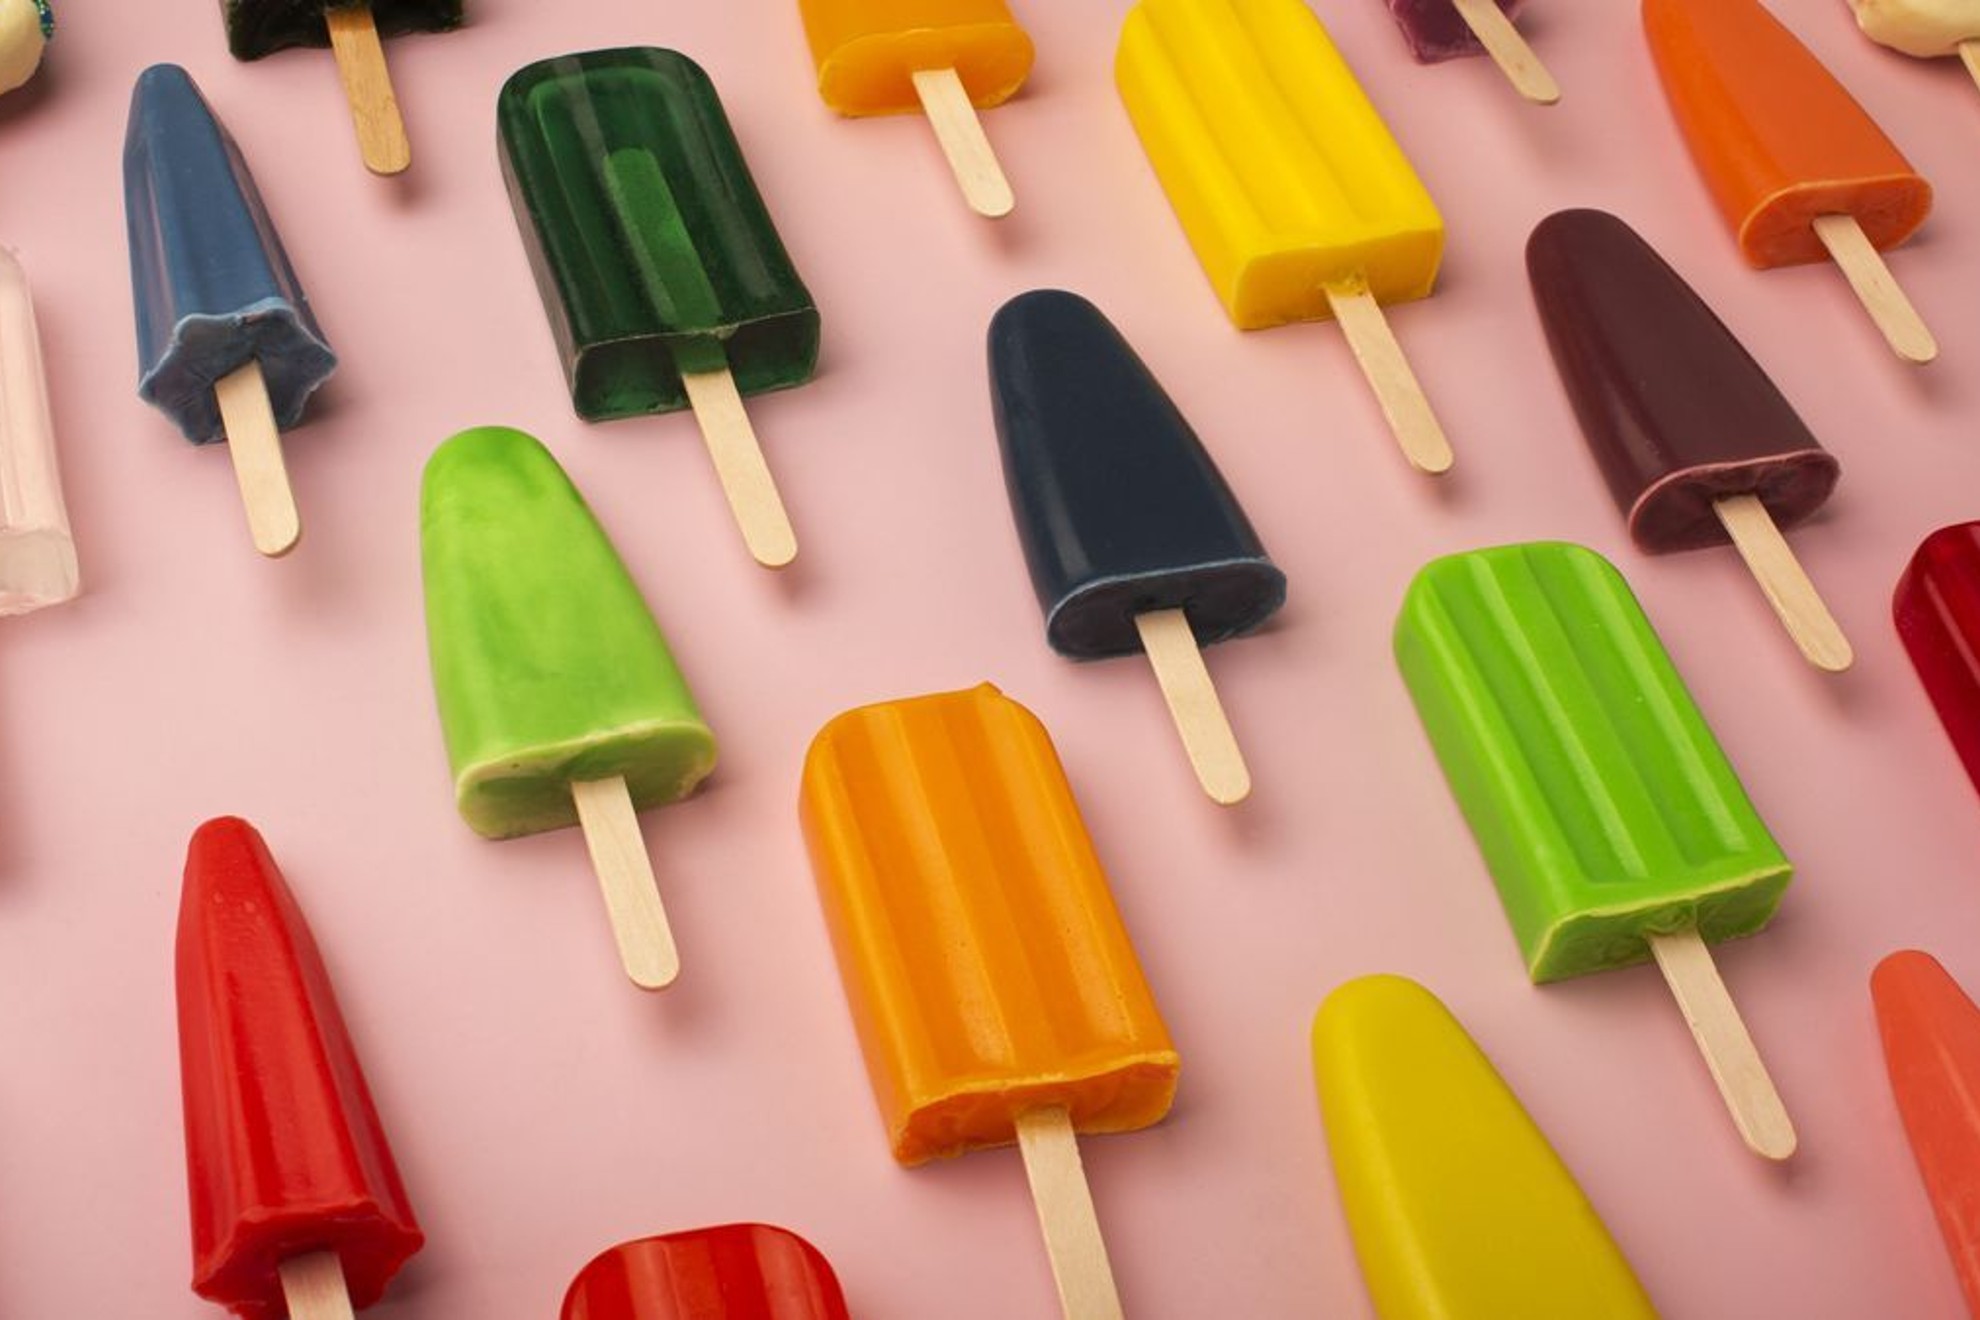 Alerta alimentaria en helados de Mercadona, Lidl y Aldi: ¿cuáles son y de qué marcas?